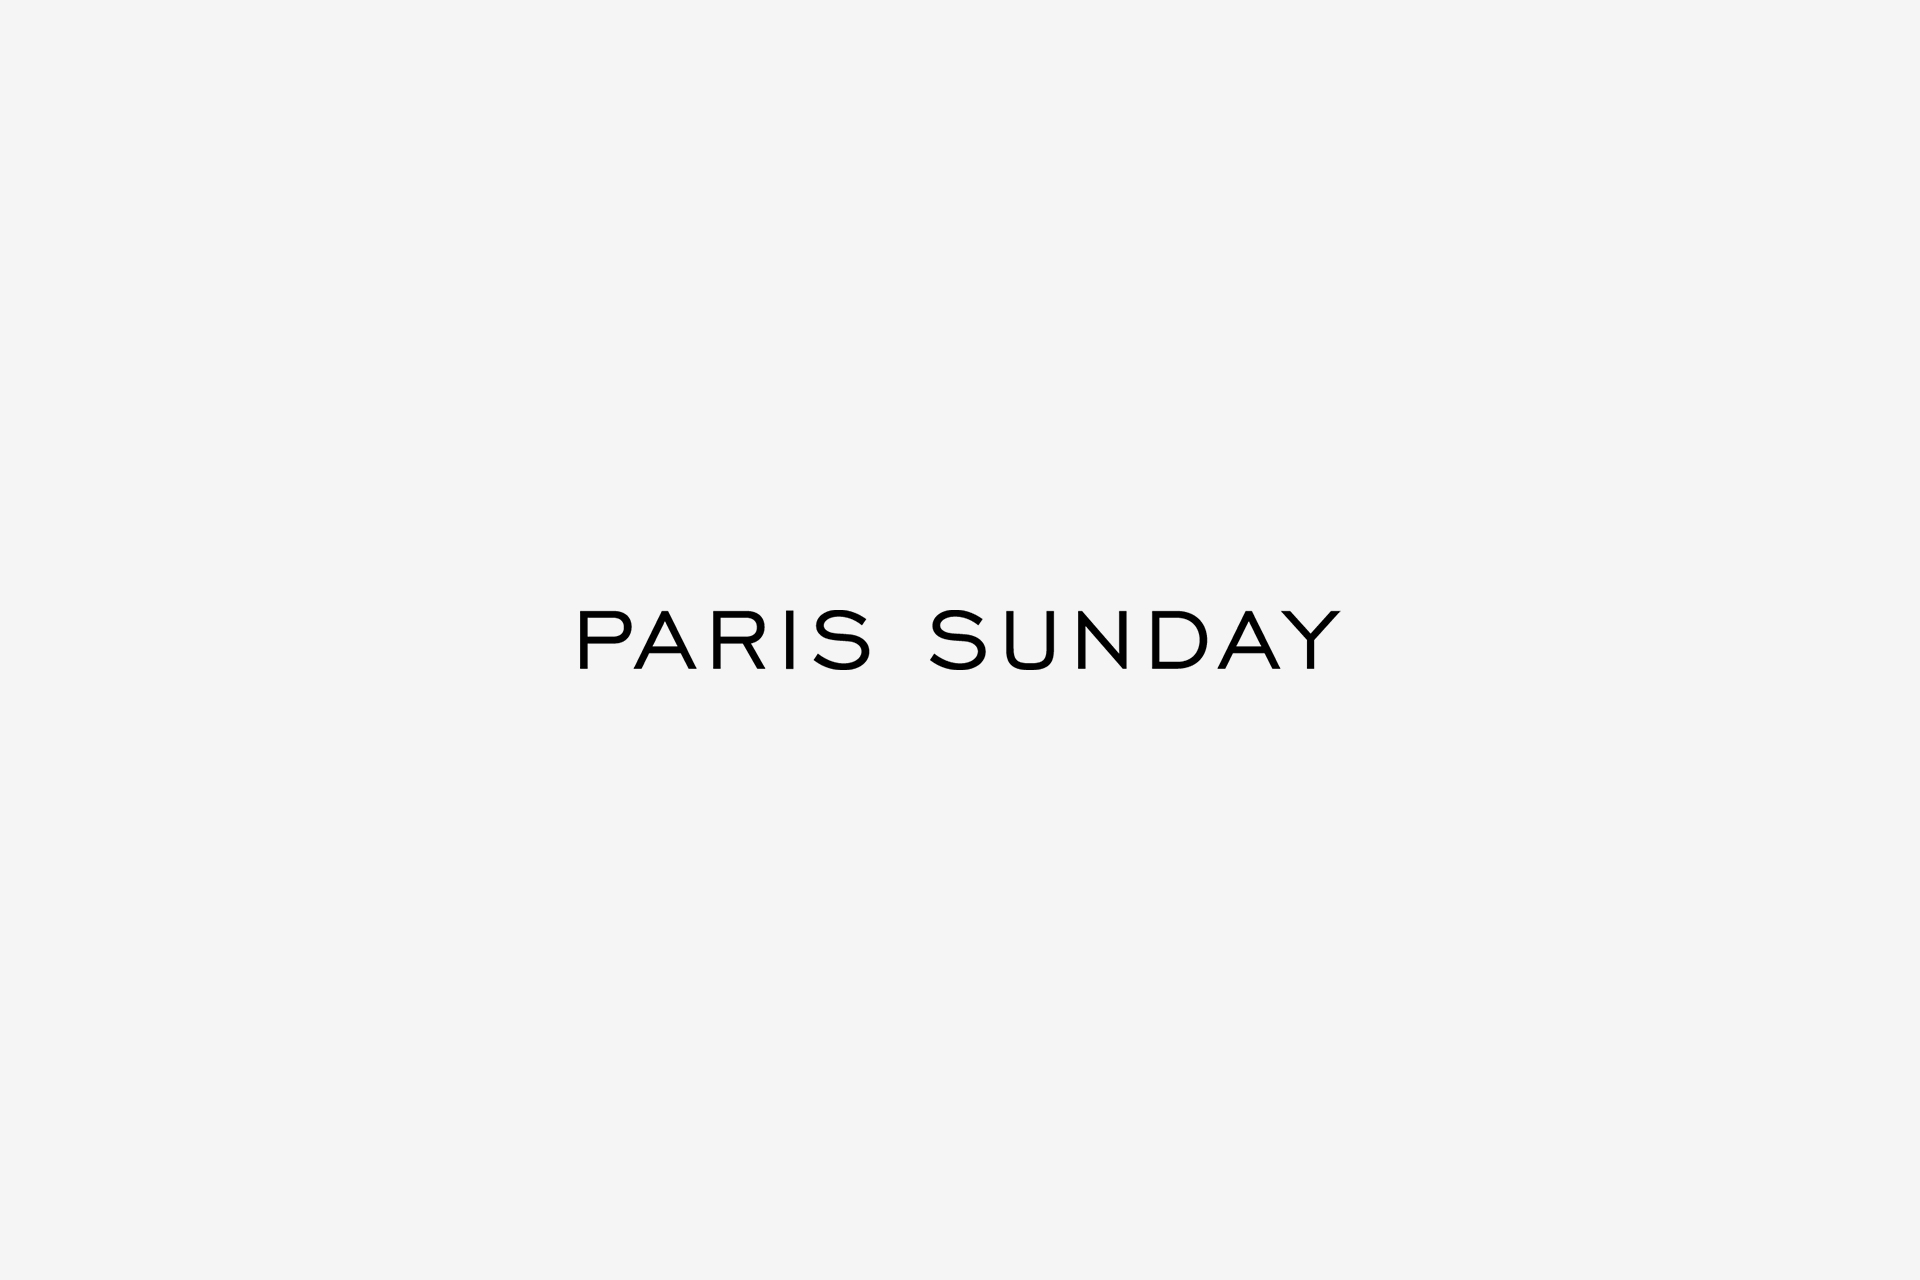 Paris Sunday